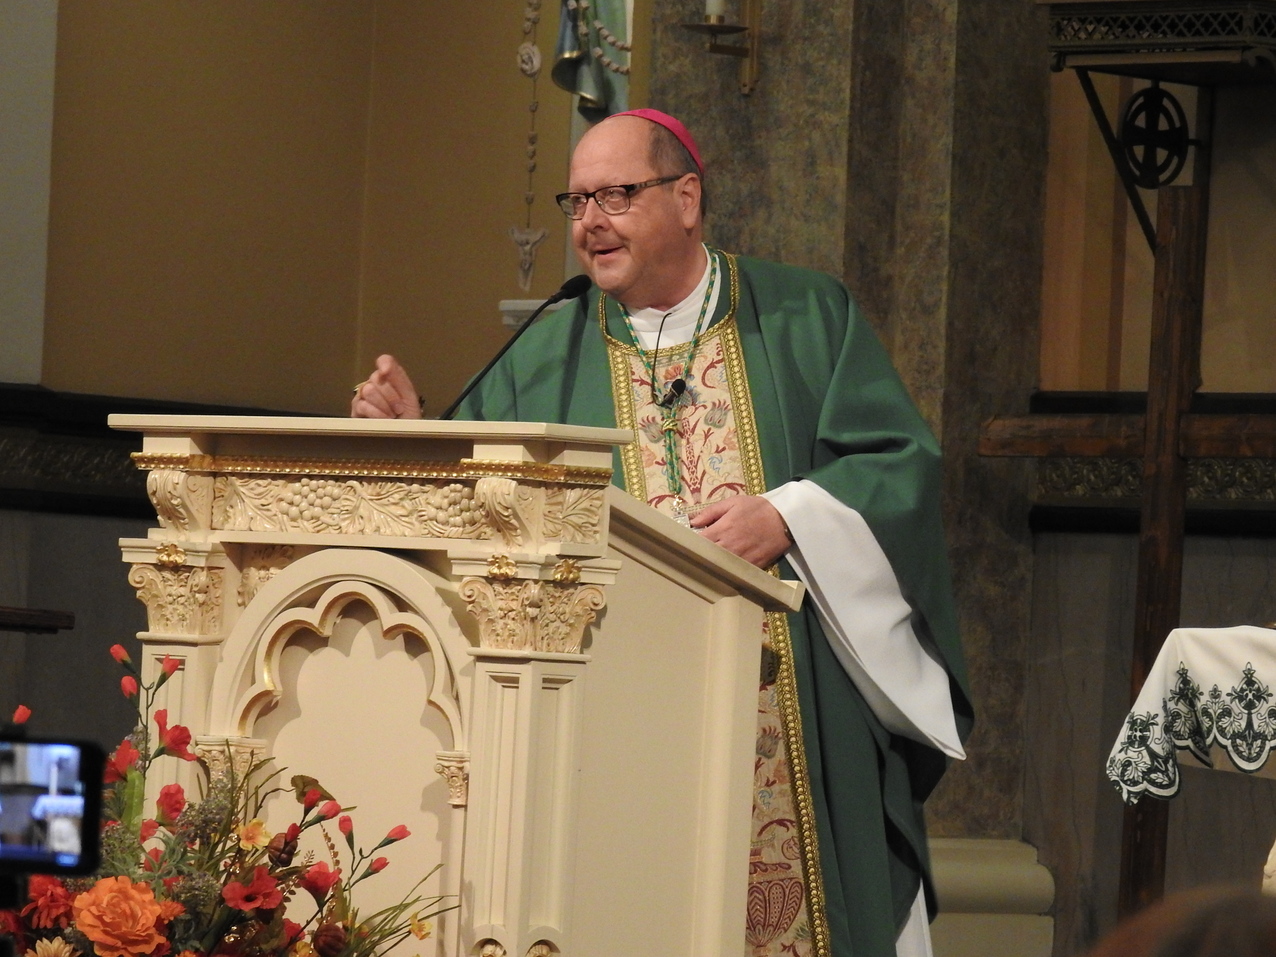 Bishop Malesic celebrates Mass during visit to St. John Nepomucene Parish